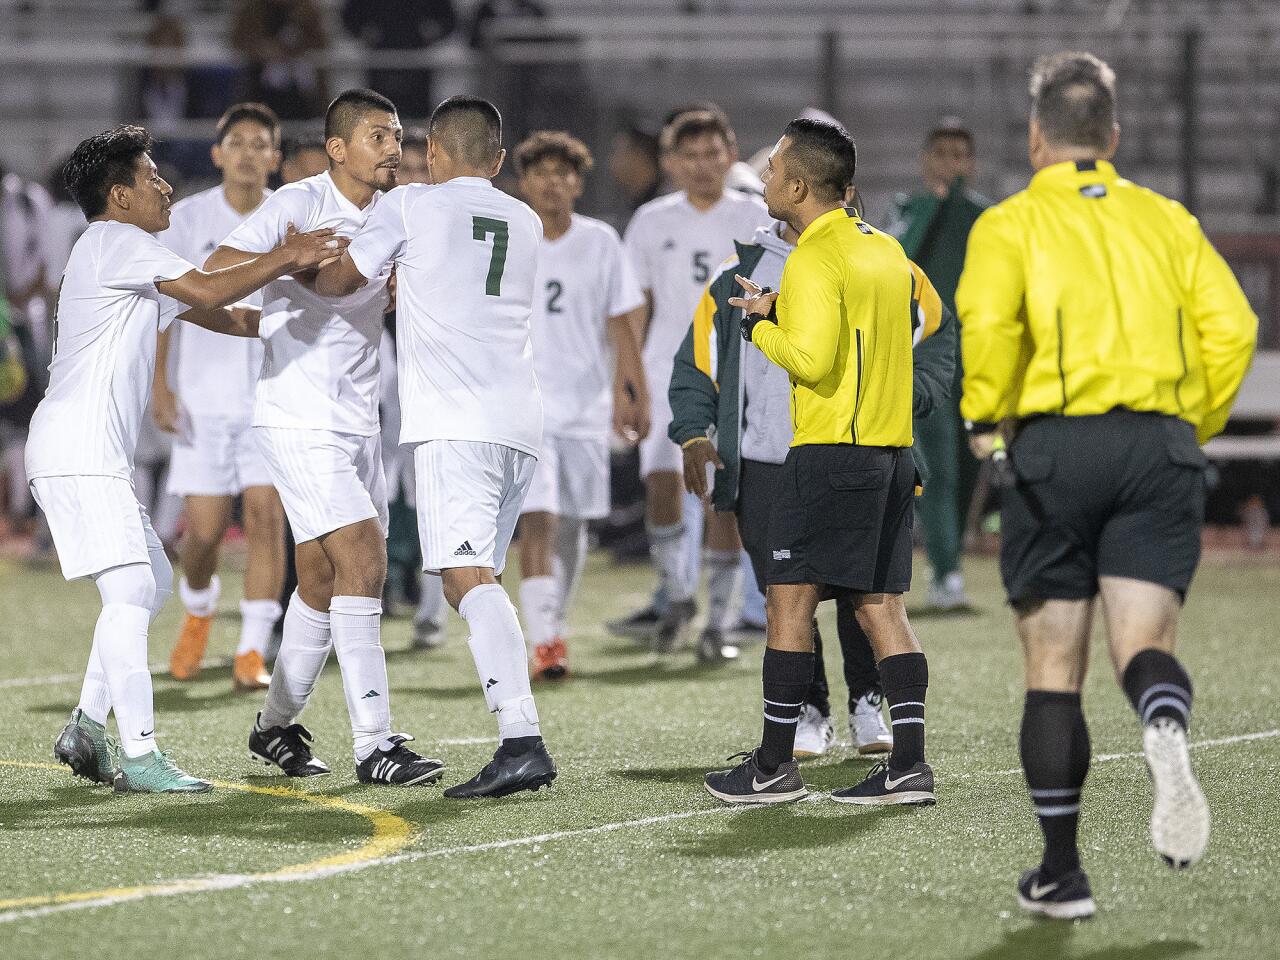 Photo Gallery: Estancia vs. Saddleback in boys’ soccer